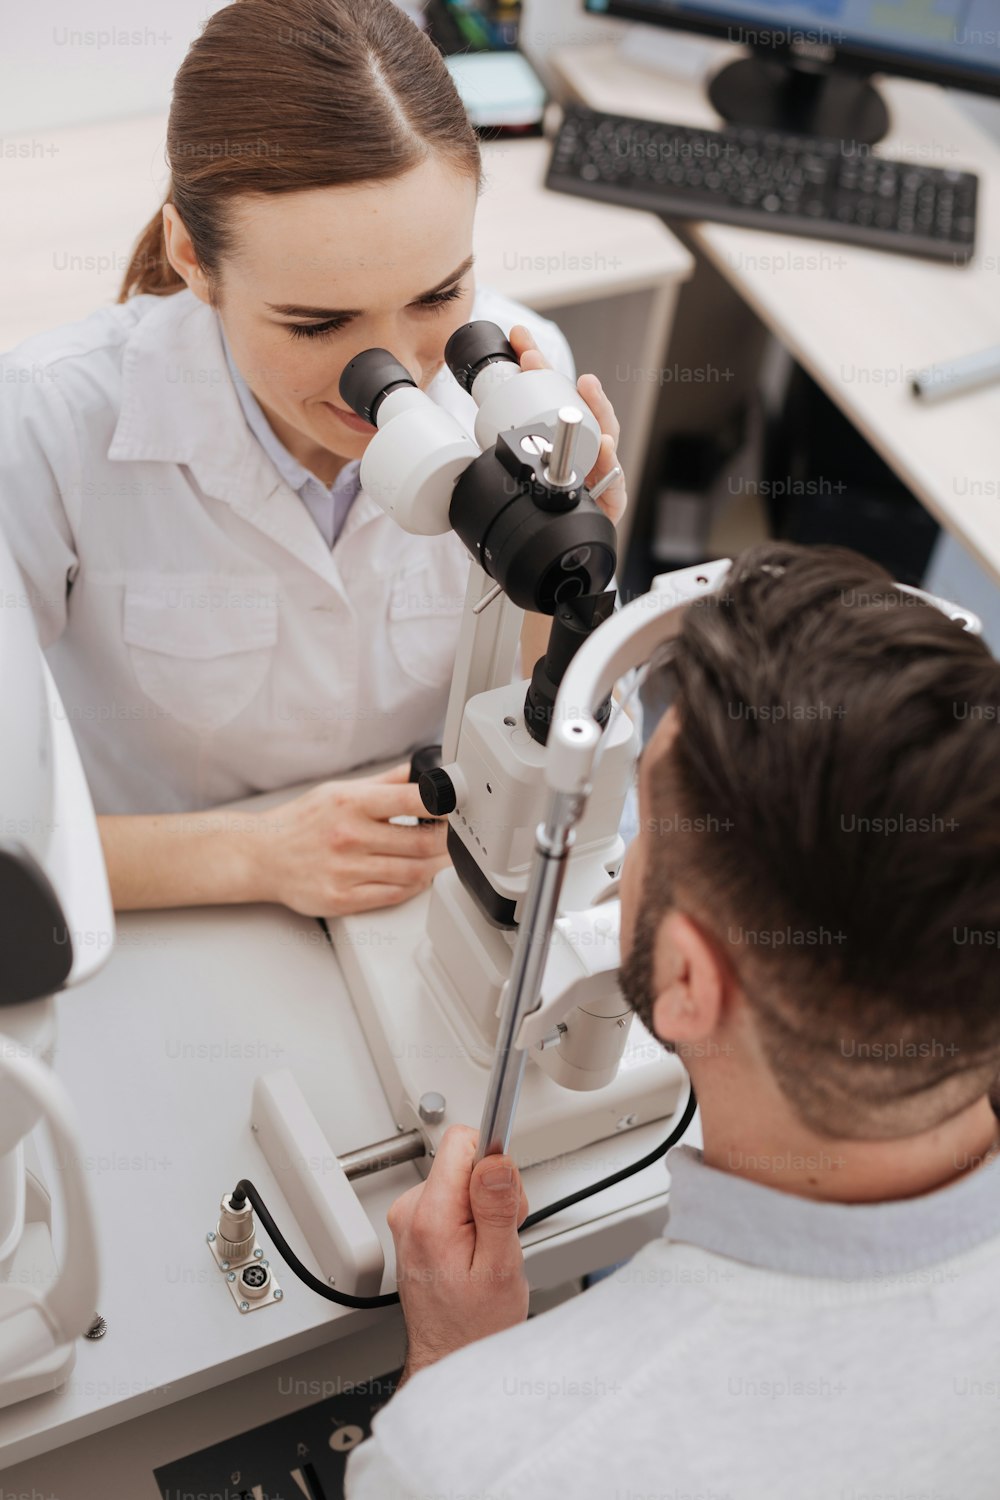 Examen oftalmológico. Vista superior de una bonita óptica profesional sentada frente a su paciente y examinando sus ojos mientras usa equipo médico